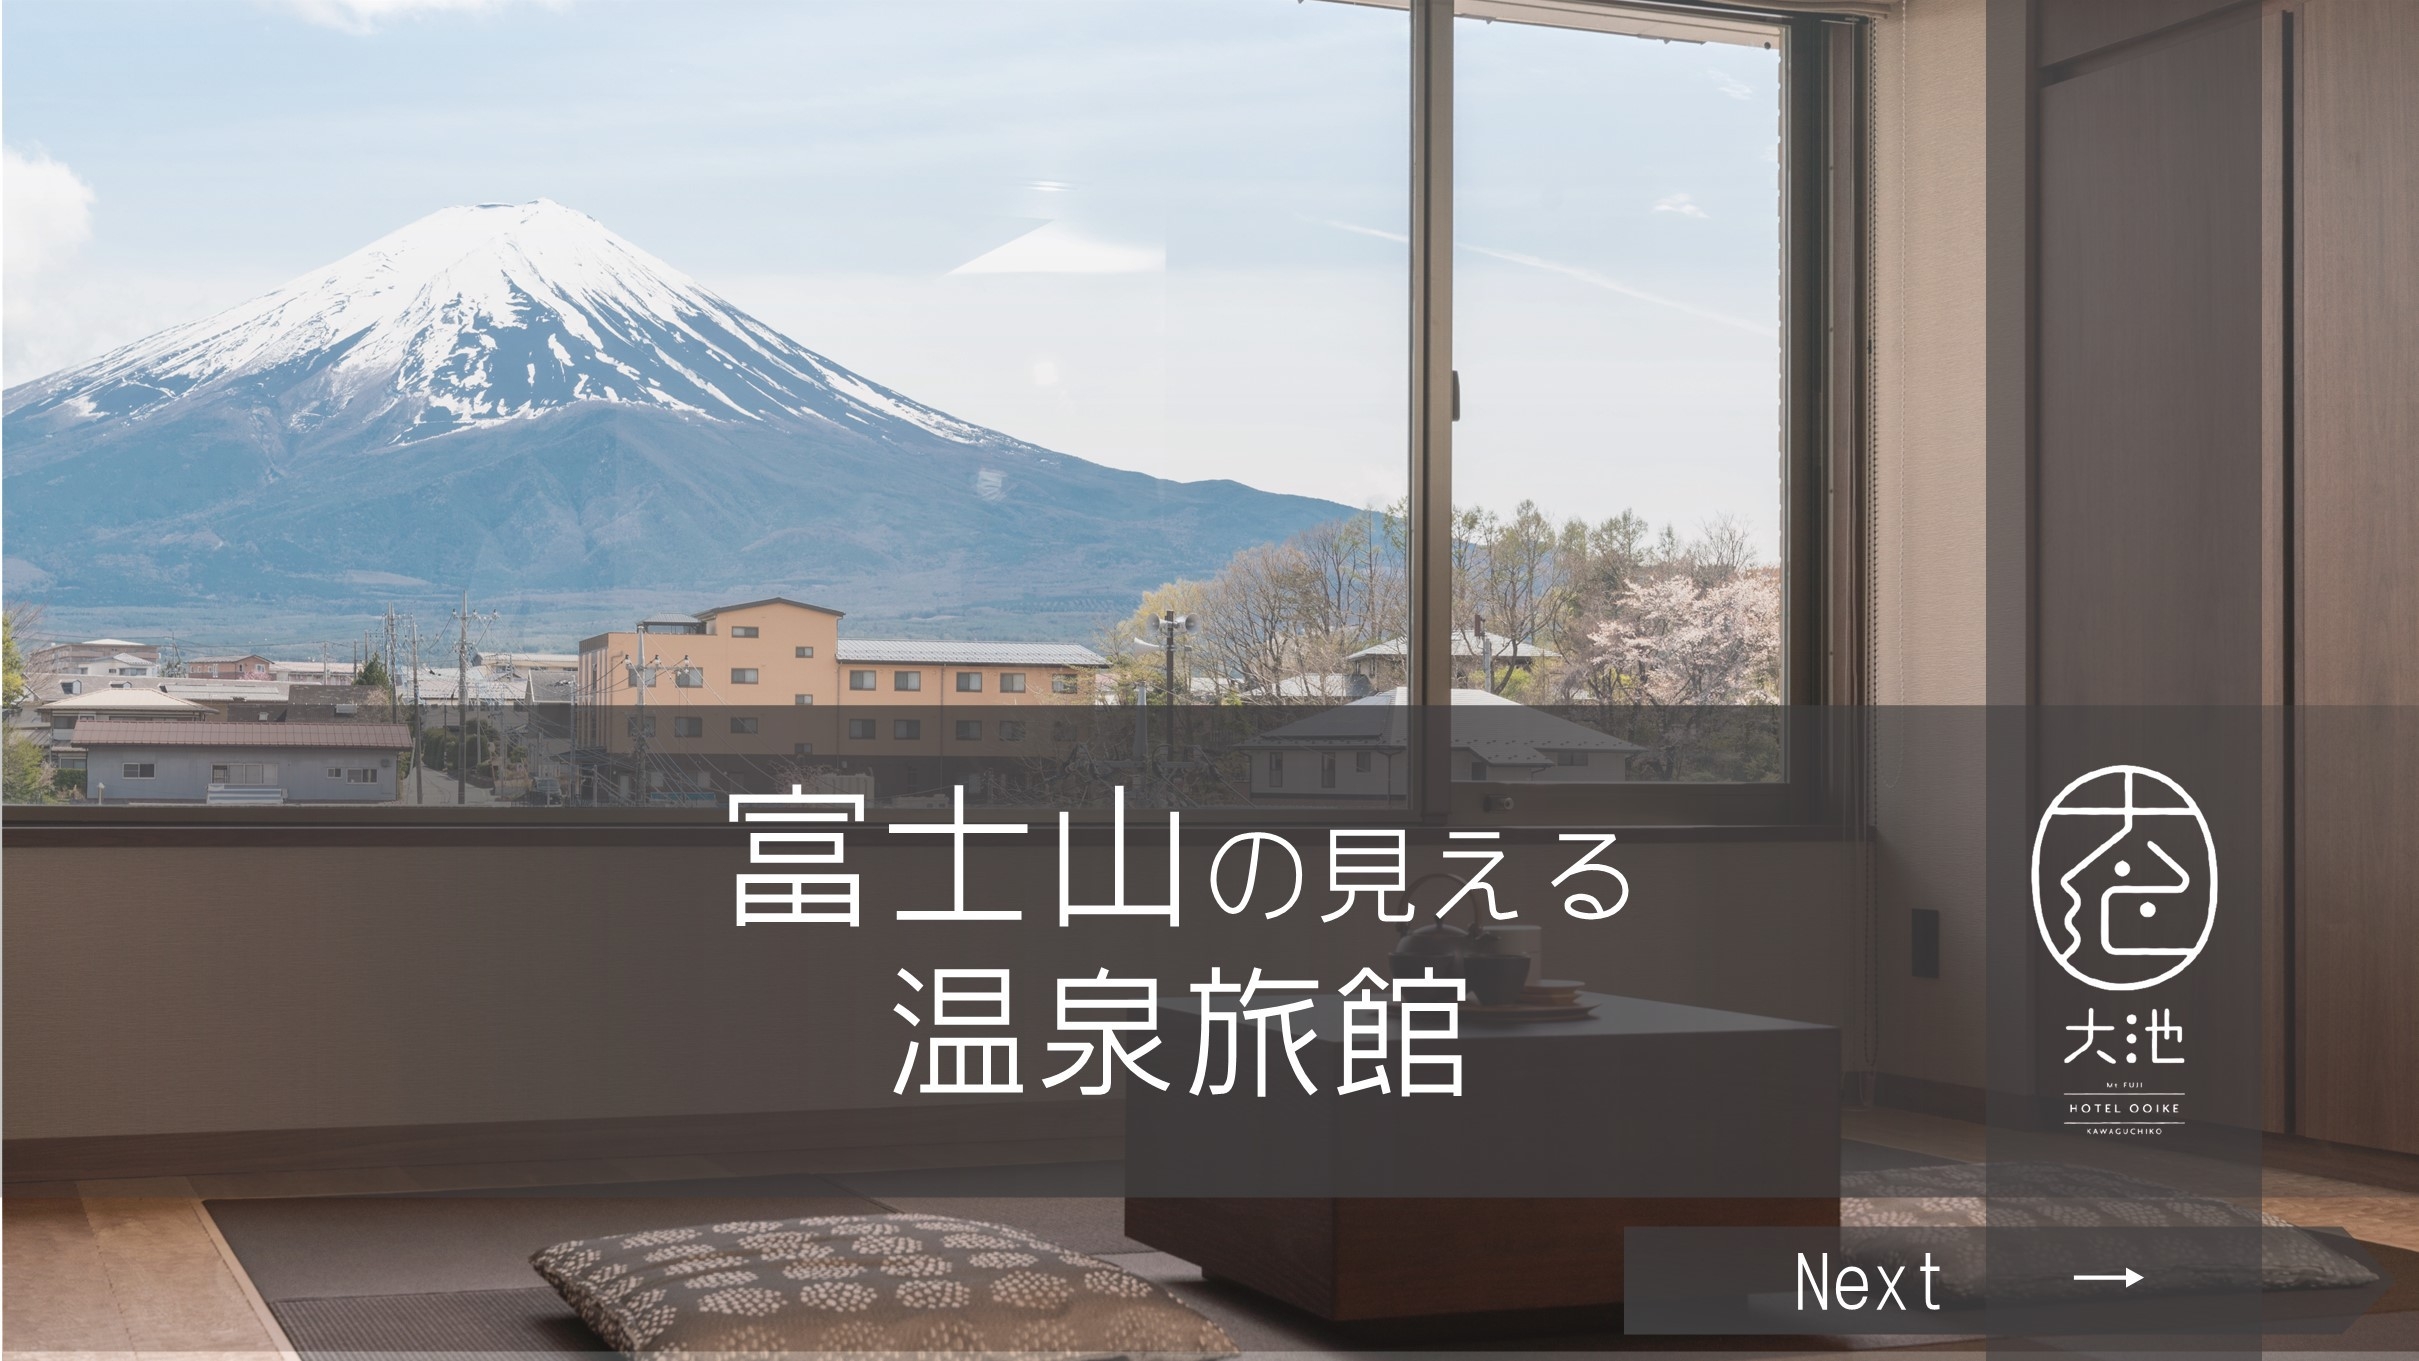 【温泉SALE】【温泉セール】『基本プラン』【二食付】今だけ特別 富士山の見える温泉旅館